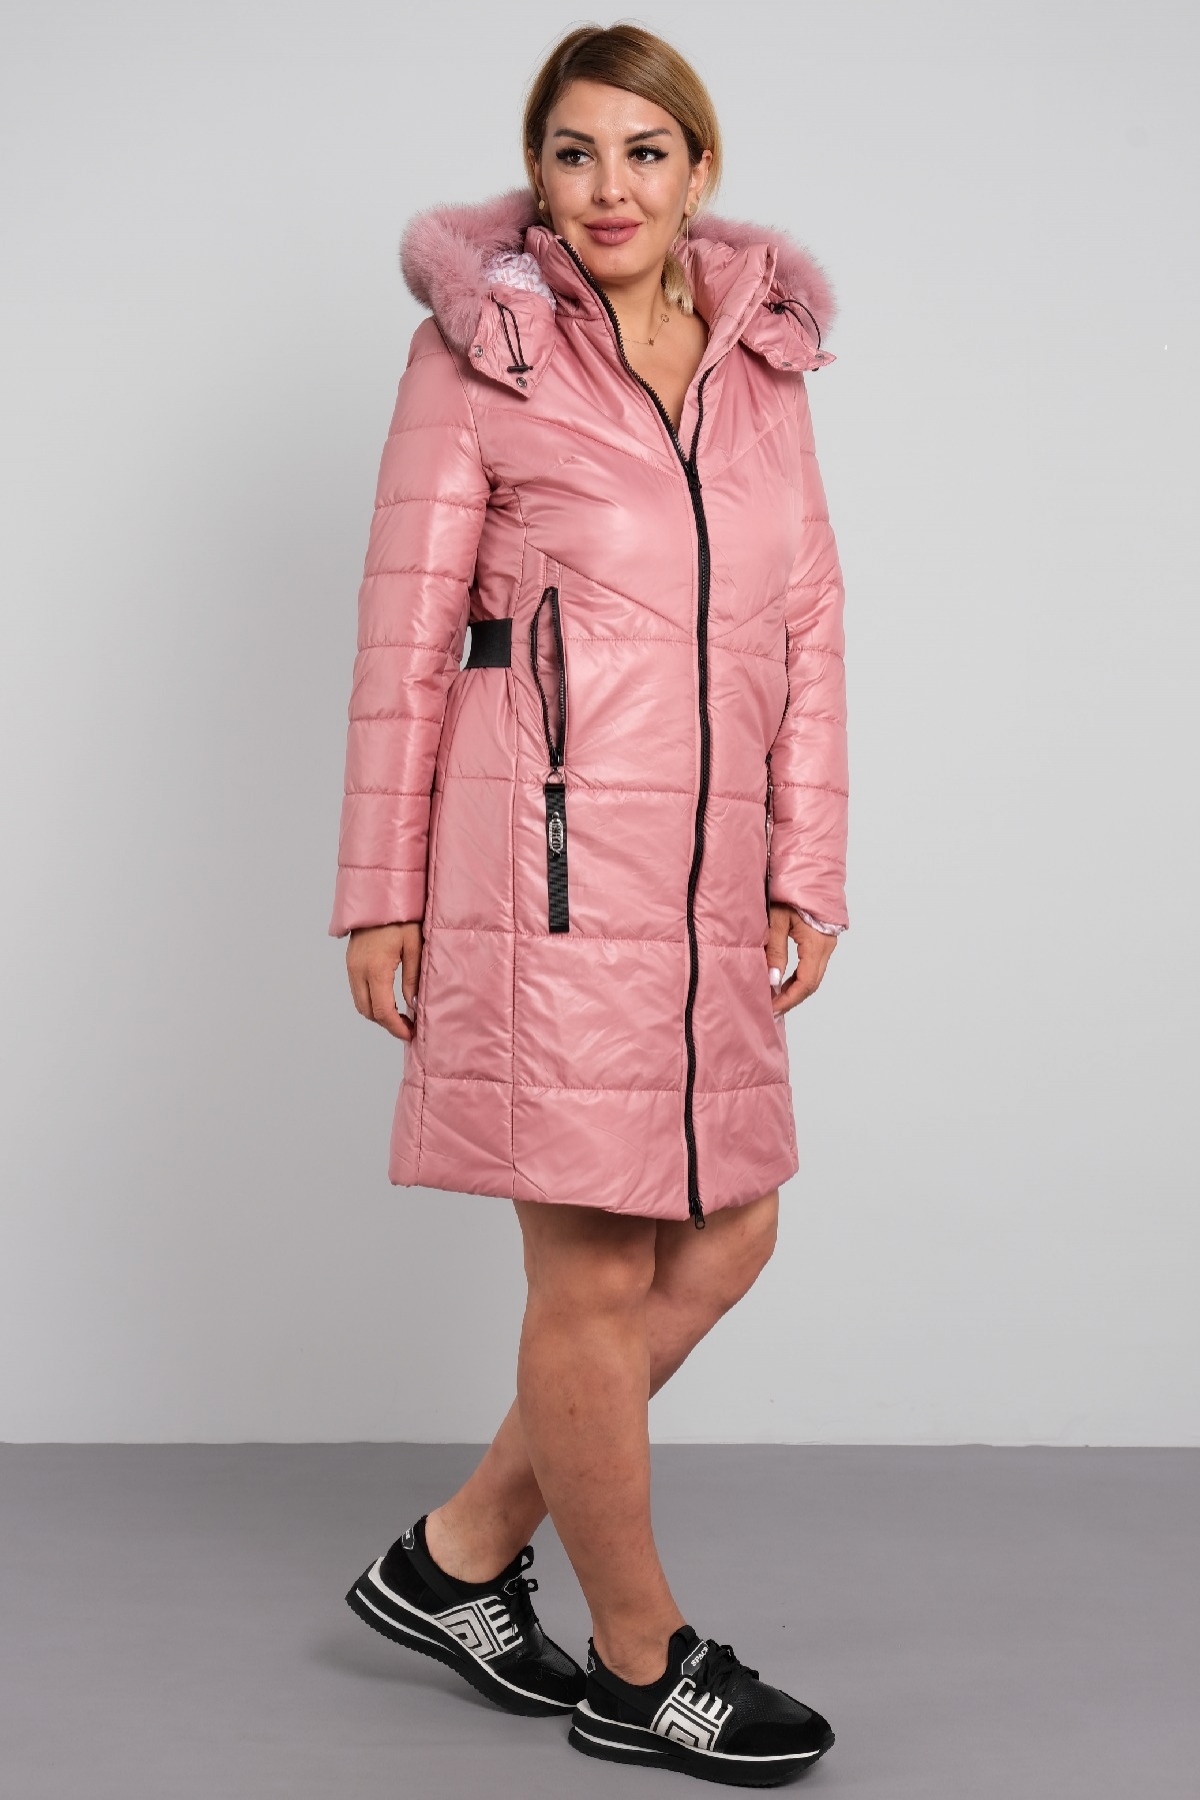 Coats-powder pink